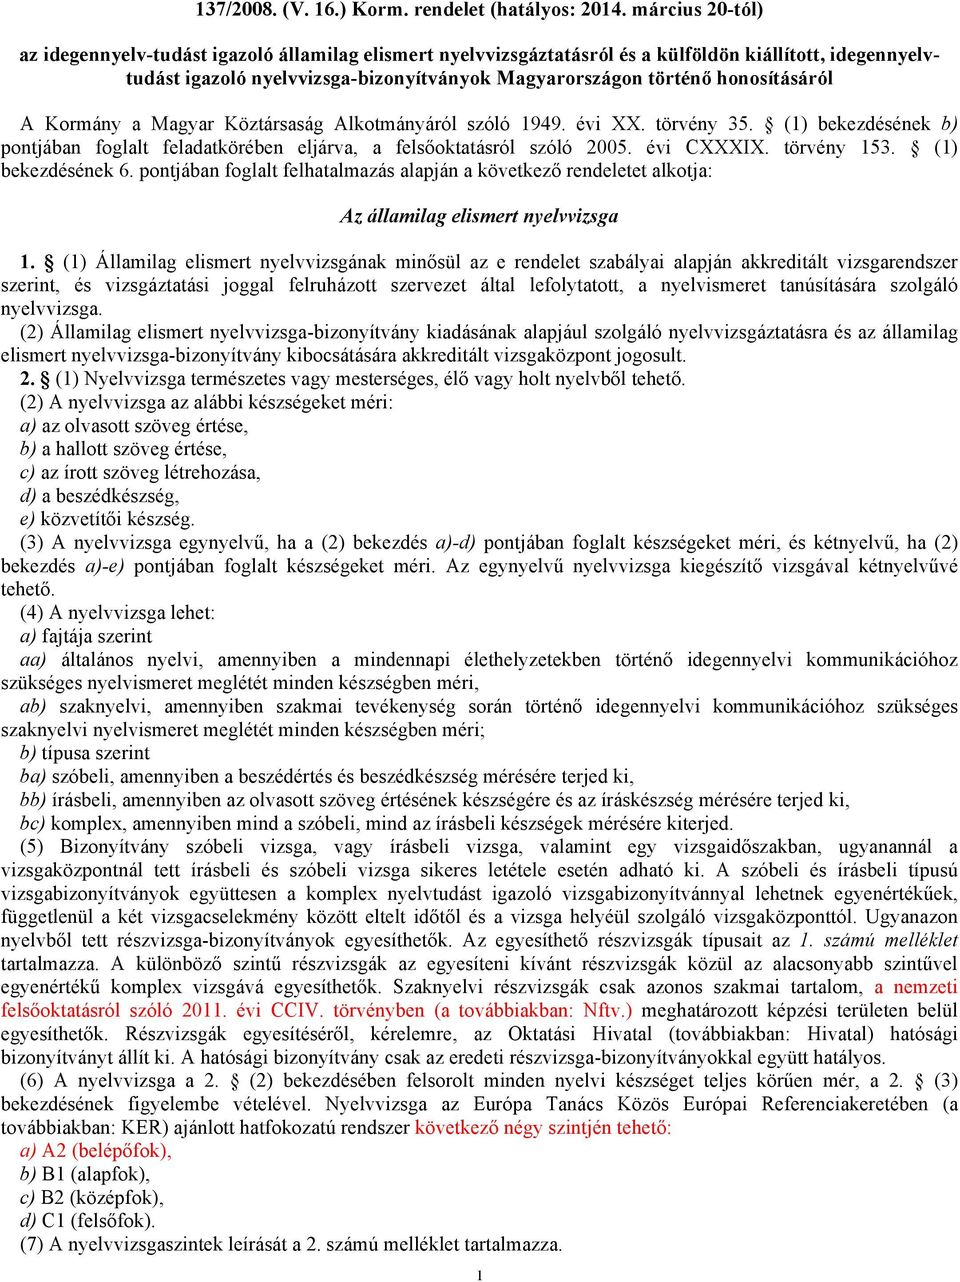 honosításáról A Kormány a Magyar Köztársaság Alkotmányáról szóló 1949. évi XX. törvény 35. (1) bekezdésének b) pontjában foglalt feladatkörében eljárva, a felsőoktatásról szóló 2005. évi CXXXIX.